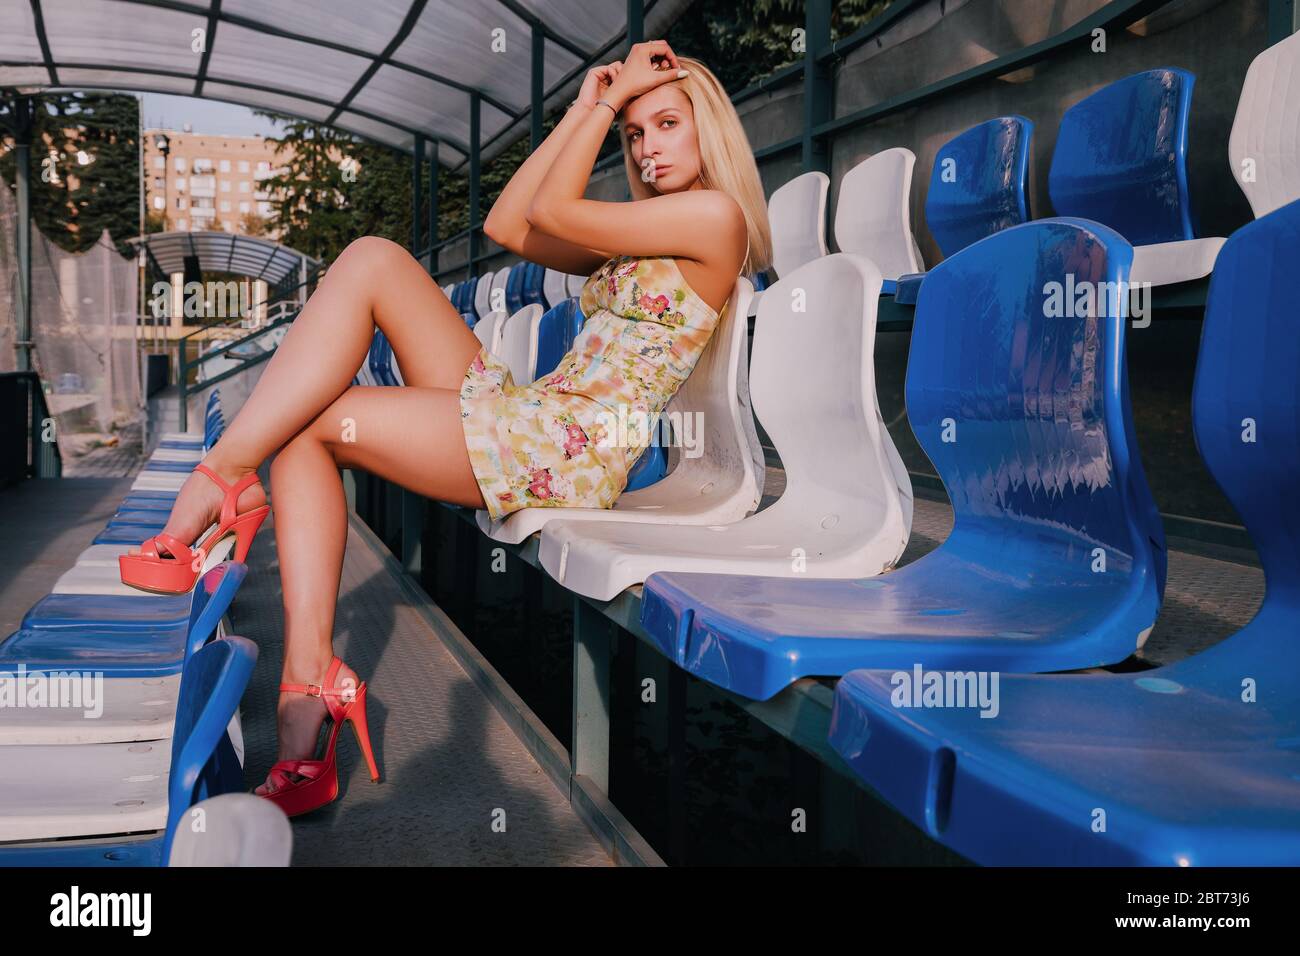 Bella ragazza bionda è seduta su un supporto (tribuna). Indossa un vestito corto leggero e tacchi alti rossi. È soleggiata. Foto Stock